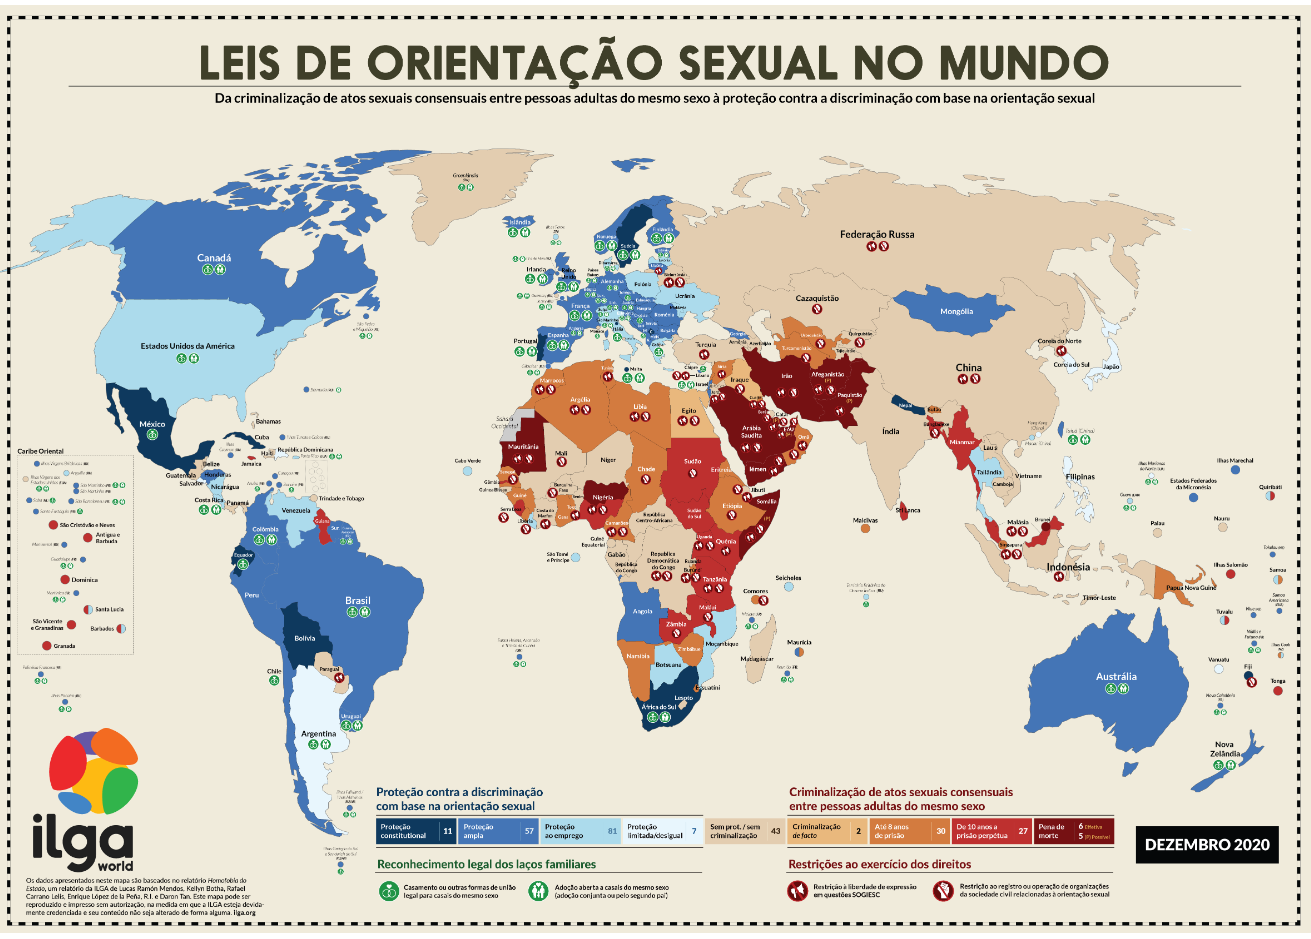  Mapa divulgado pelo ILGA mostra que o Brasil está entre os que mais protegem a comunidade.